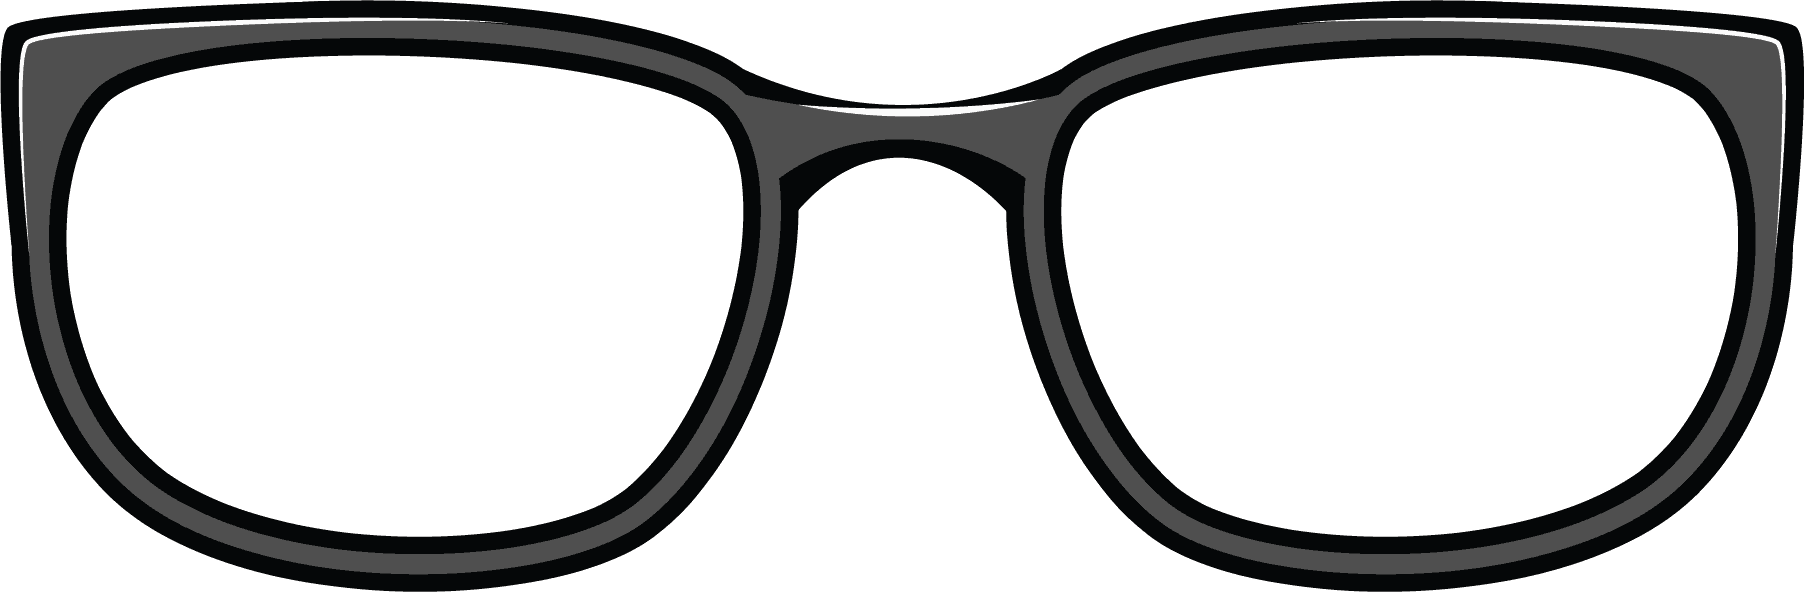 Eye Glasses Clip Art Clip Art Library